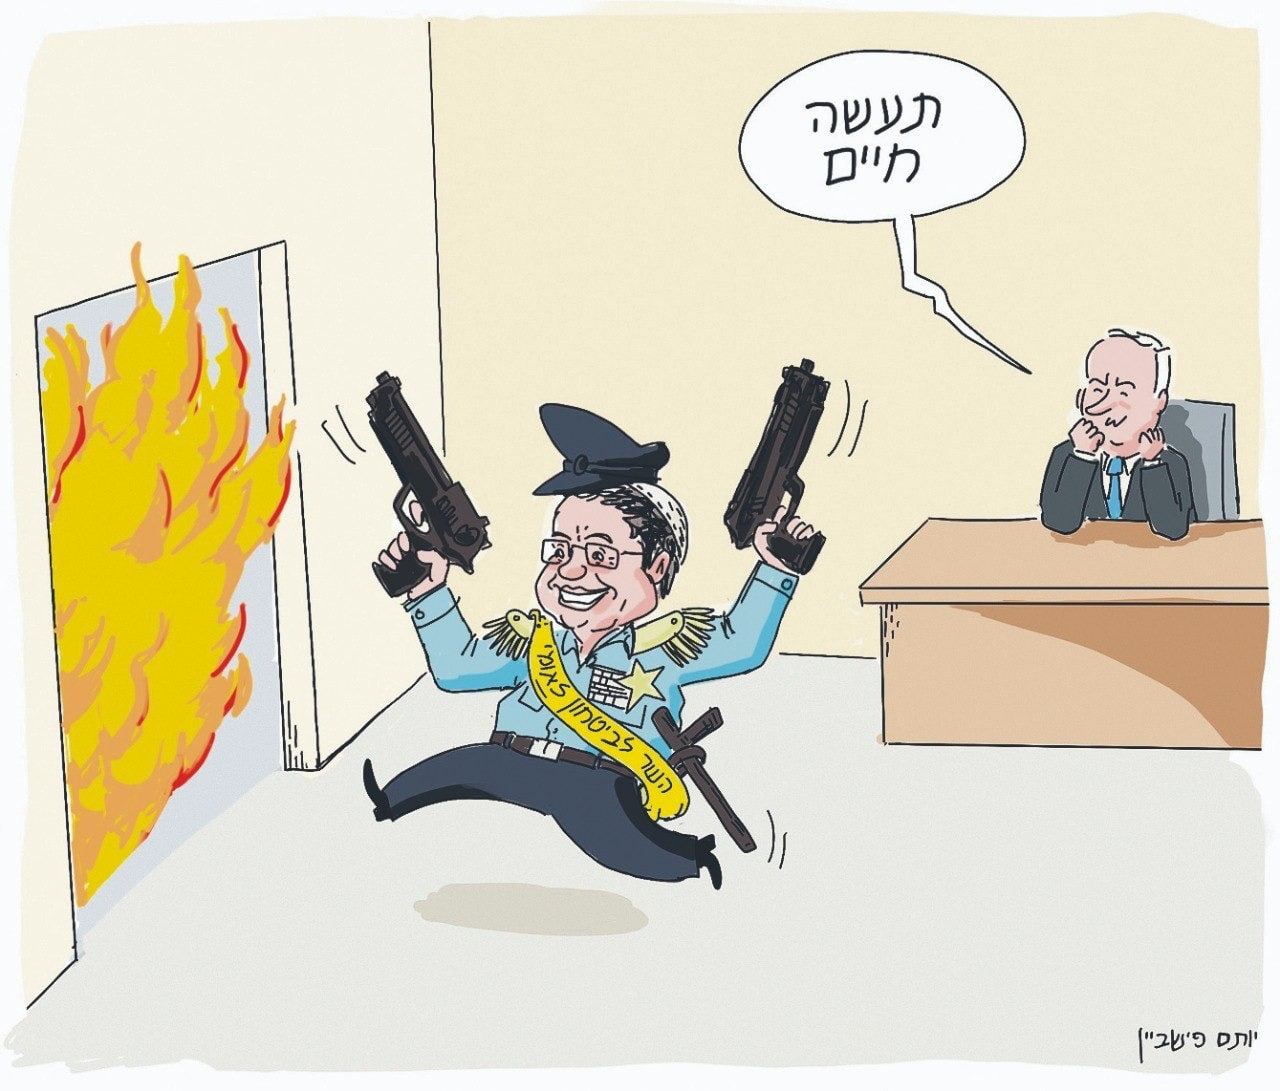 كاريكاتير نشرته صحيفة "يديعوت أحرونوت"، بعد موافقة بنيامين نتنياهو على تعيين بن غفير وزيرًا للأمن القومي